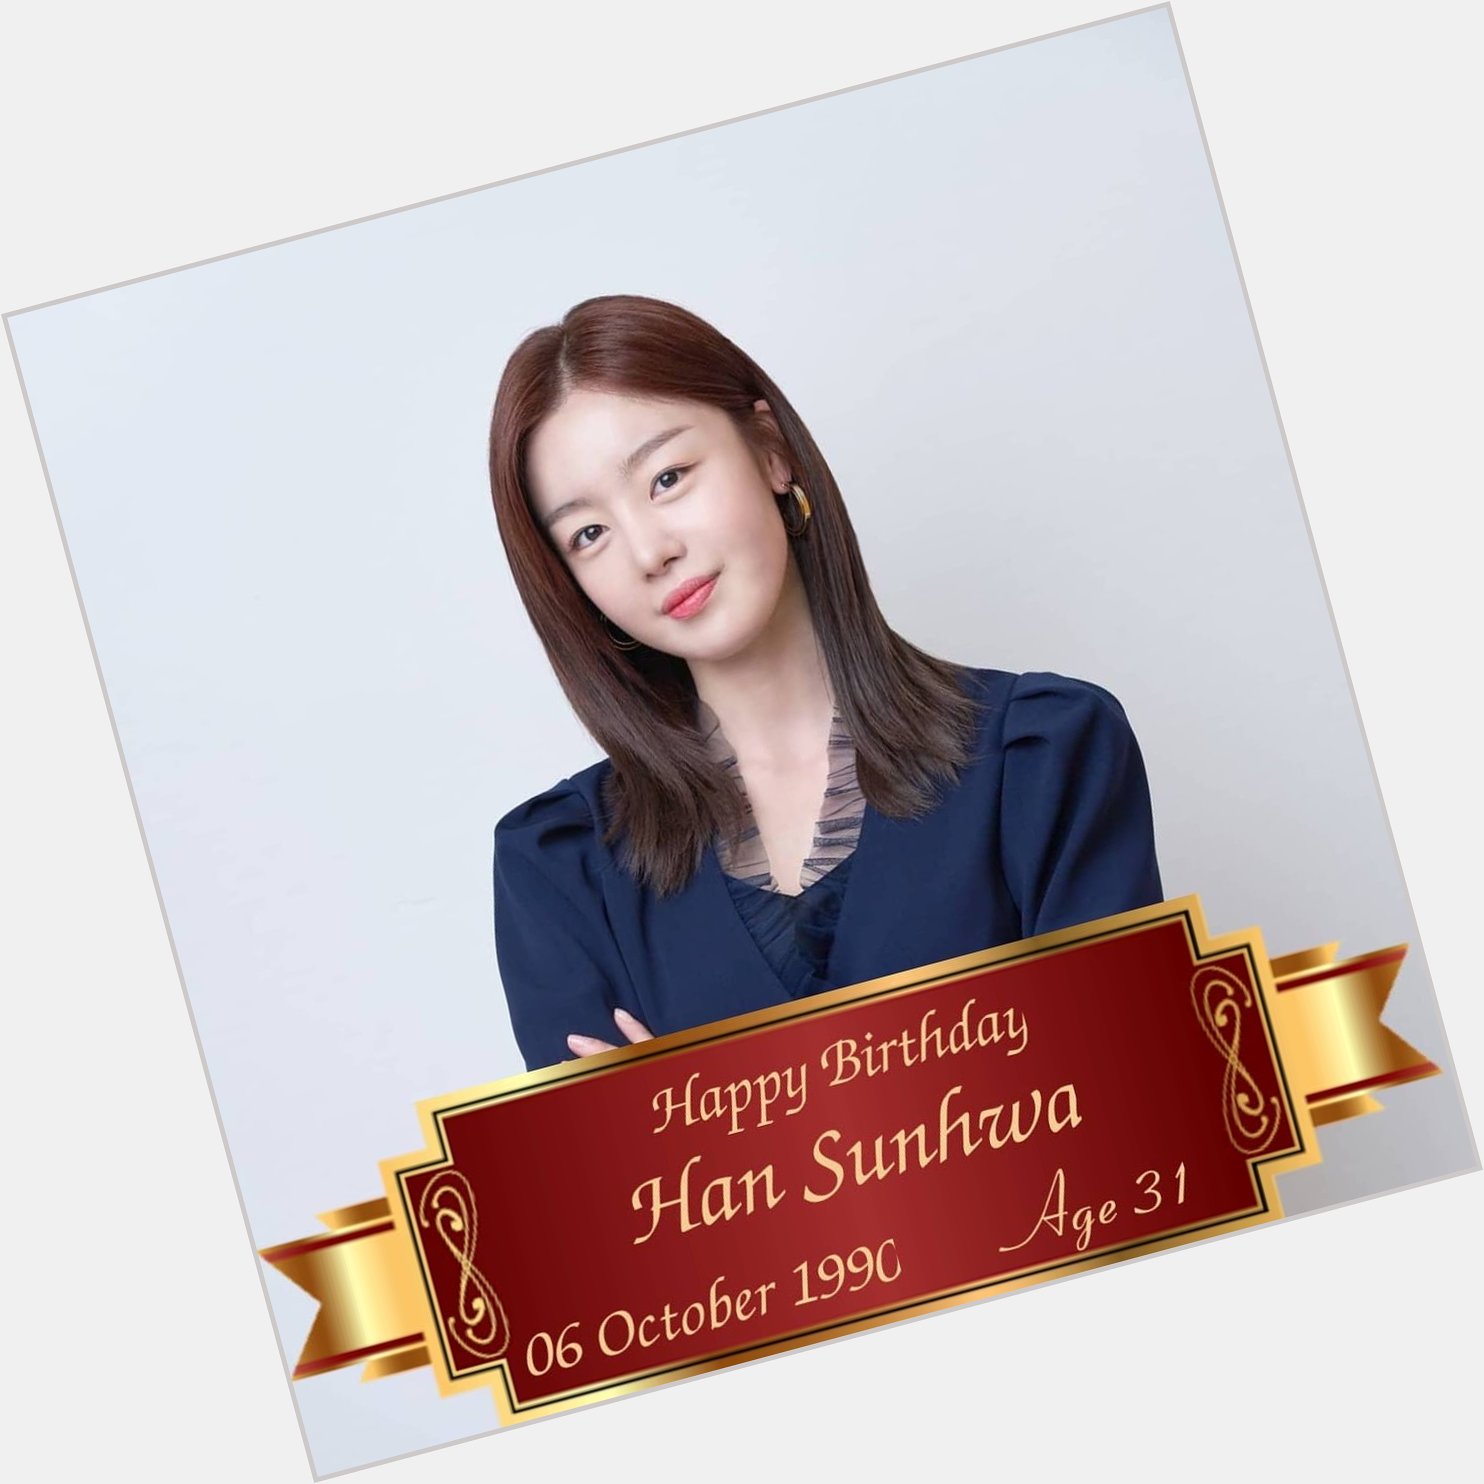 Happy Birthday to Han Sunhwa Unnie      